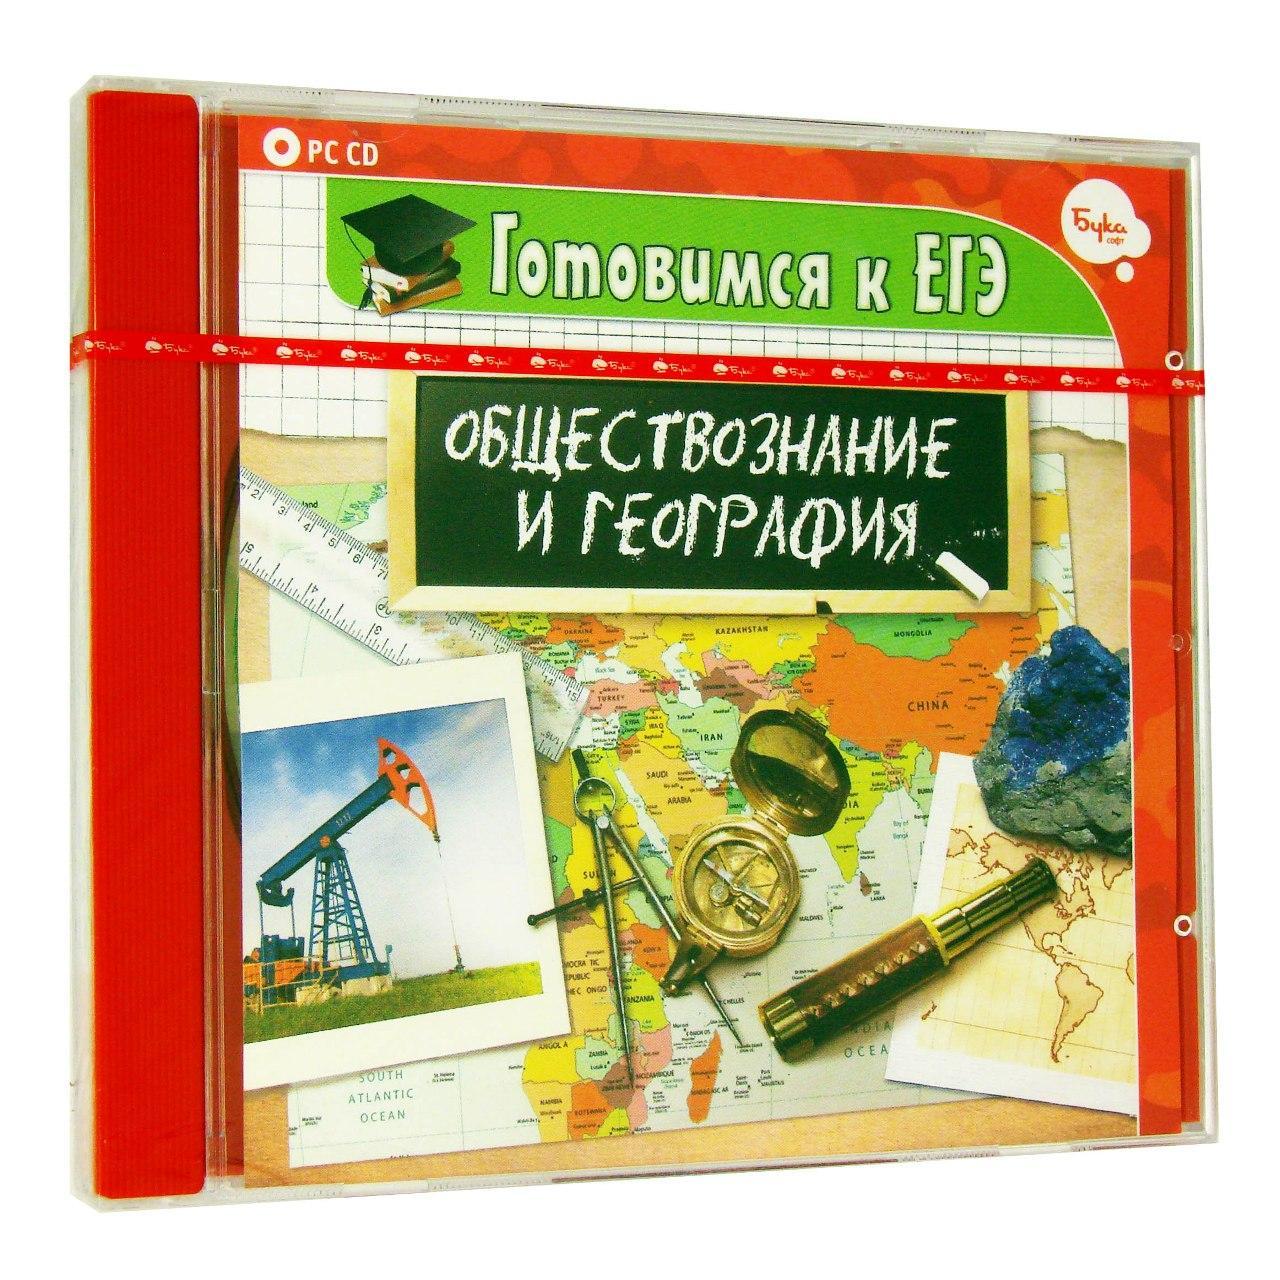 Компьютерный компакт-диск Готовимся к ЕГЭ. Обществознание и География (ПК), фирма "Бука", 1CD